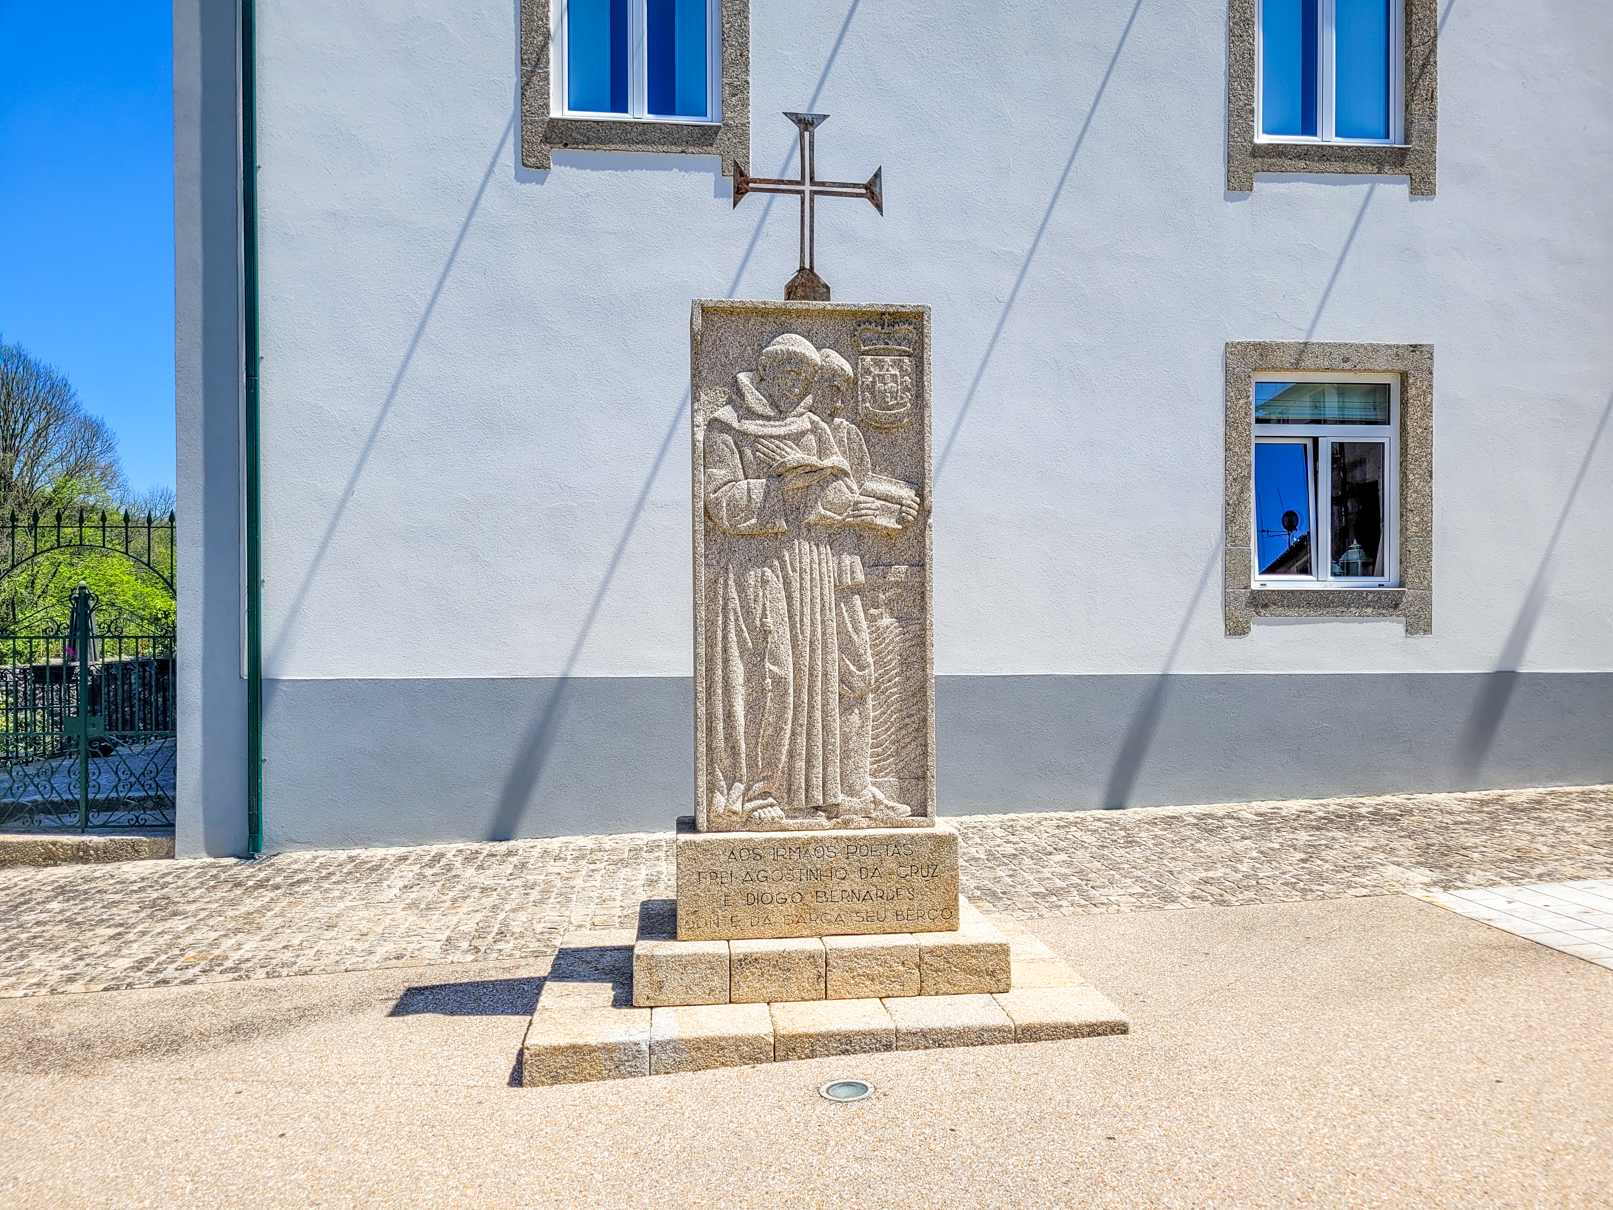 Monumento a Diogo Bernardes e Agostinho da Cruz